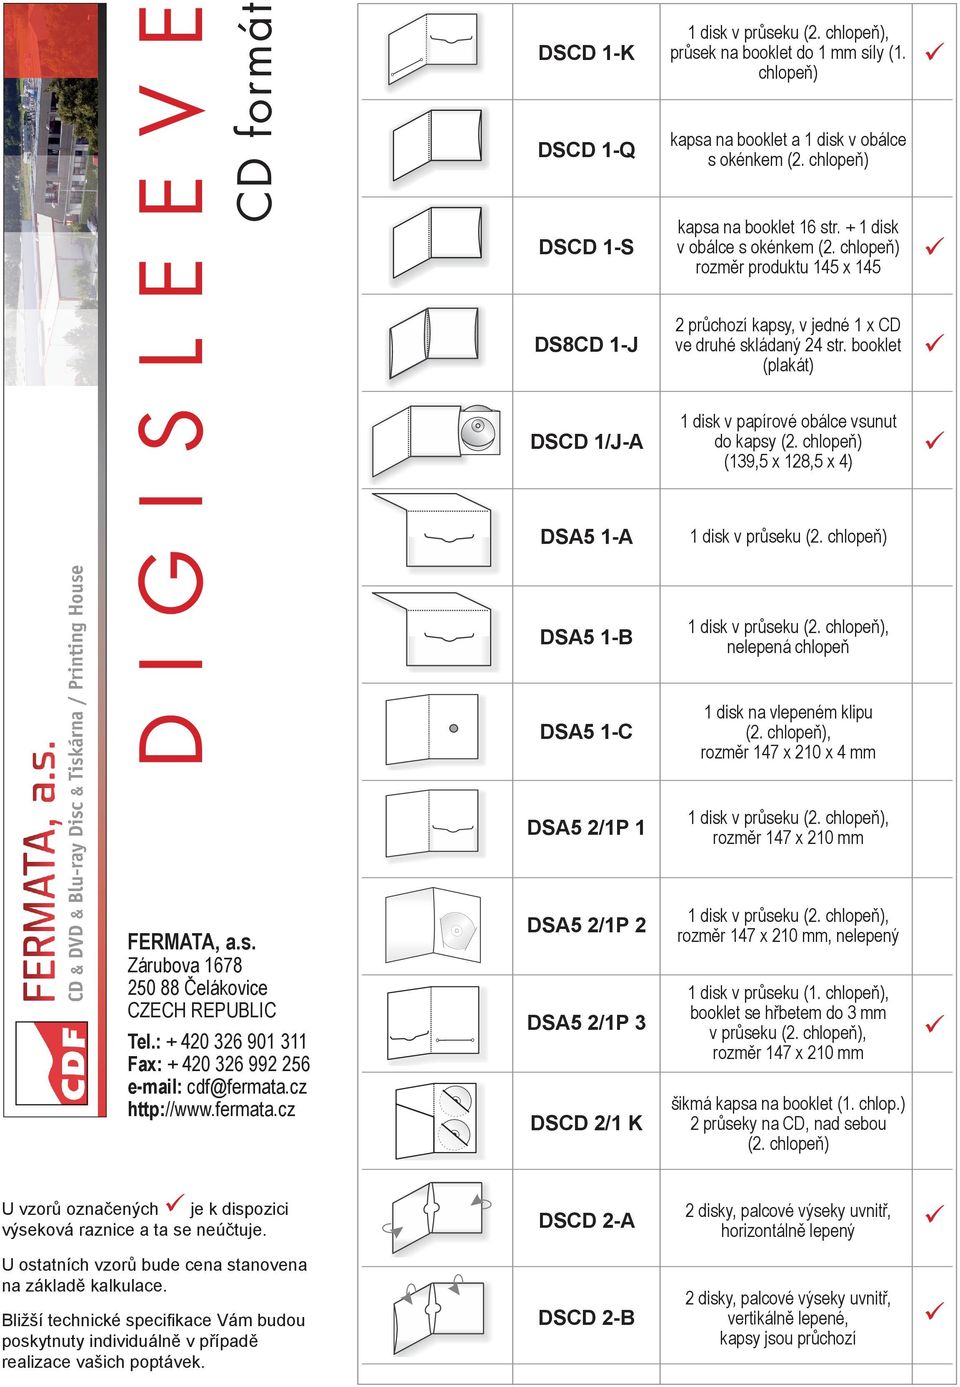 booklet (plakát) DSCD 1/J-A 1 disk v papírové obálce vsunut do kapsy (2. chlopeň) (13,5 x 128,5 x 4) DSA5 1-A 1 disk v průseku (2. chlopeň) DSA5 1-B nelepená chlopeň DSA5 1-C (2.